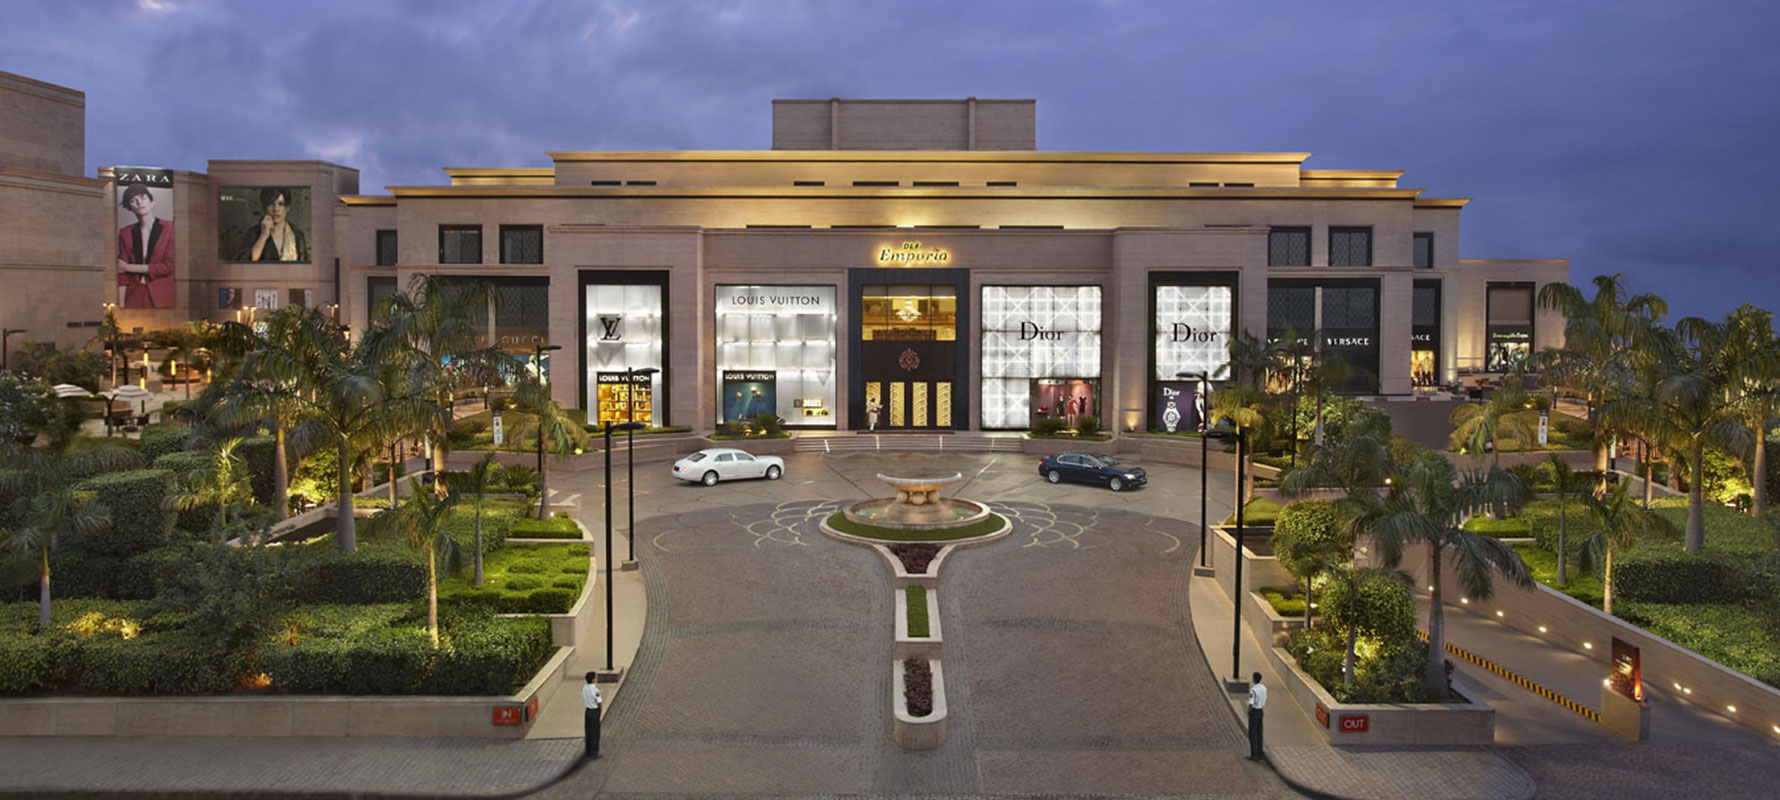 DLF Emporio Mall - Delhi